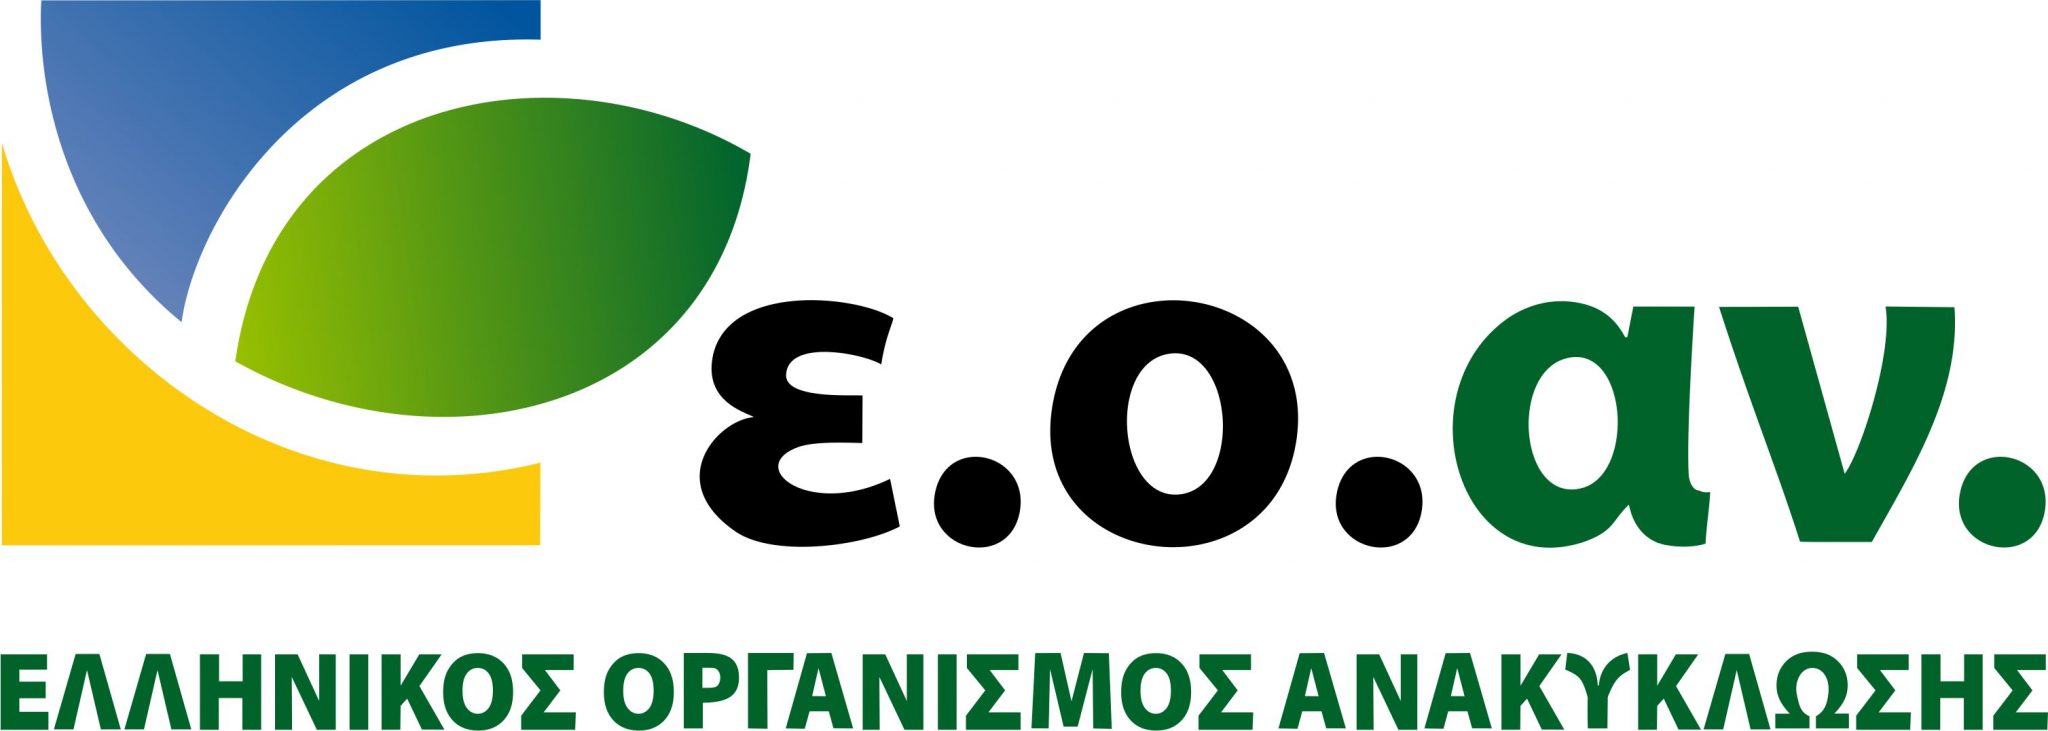 Την ριζική αλλαγή του βασικού κρατικού φορέα της εναλλακτικής διαχείρισης αποβλήτων στην Ελλάδα, του Ελληνικού Οργανισμού Ανακύκλωσης (ΕΟΑΝ), προτείνουμε οι Οικολόγοι ΠΡΑΣΙΝΟΙ προκειμένου να λειτουργήσει με ανεξάρτητο και αποτελεσματικό τρόπο. […]